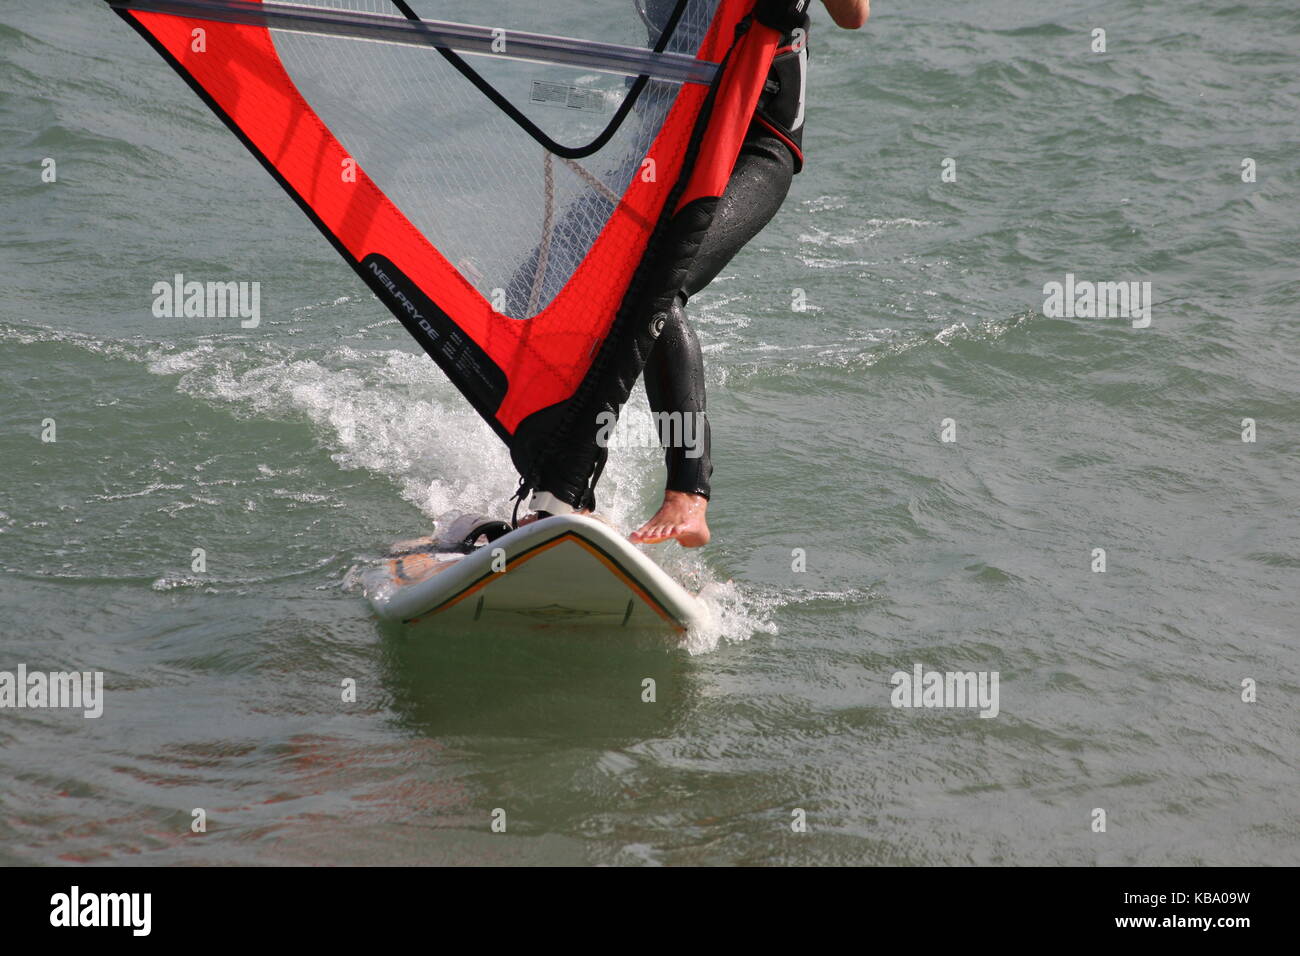 Surfer sur une planche de surf avec la voile --- surf surfeur auf mit Segel Banque D'Images